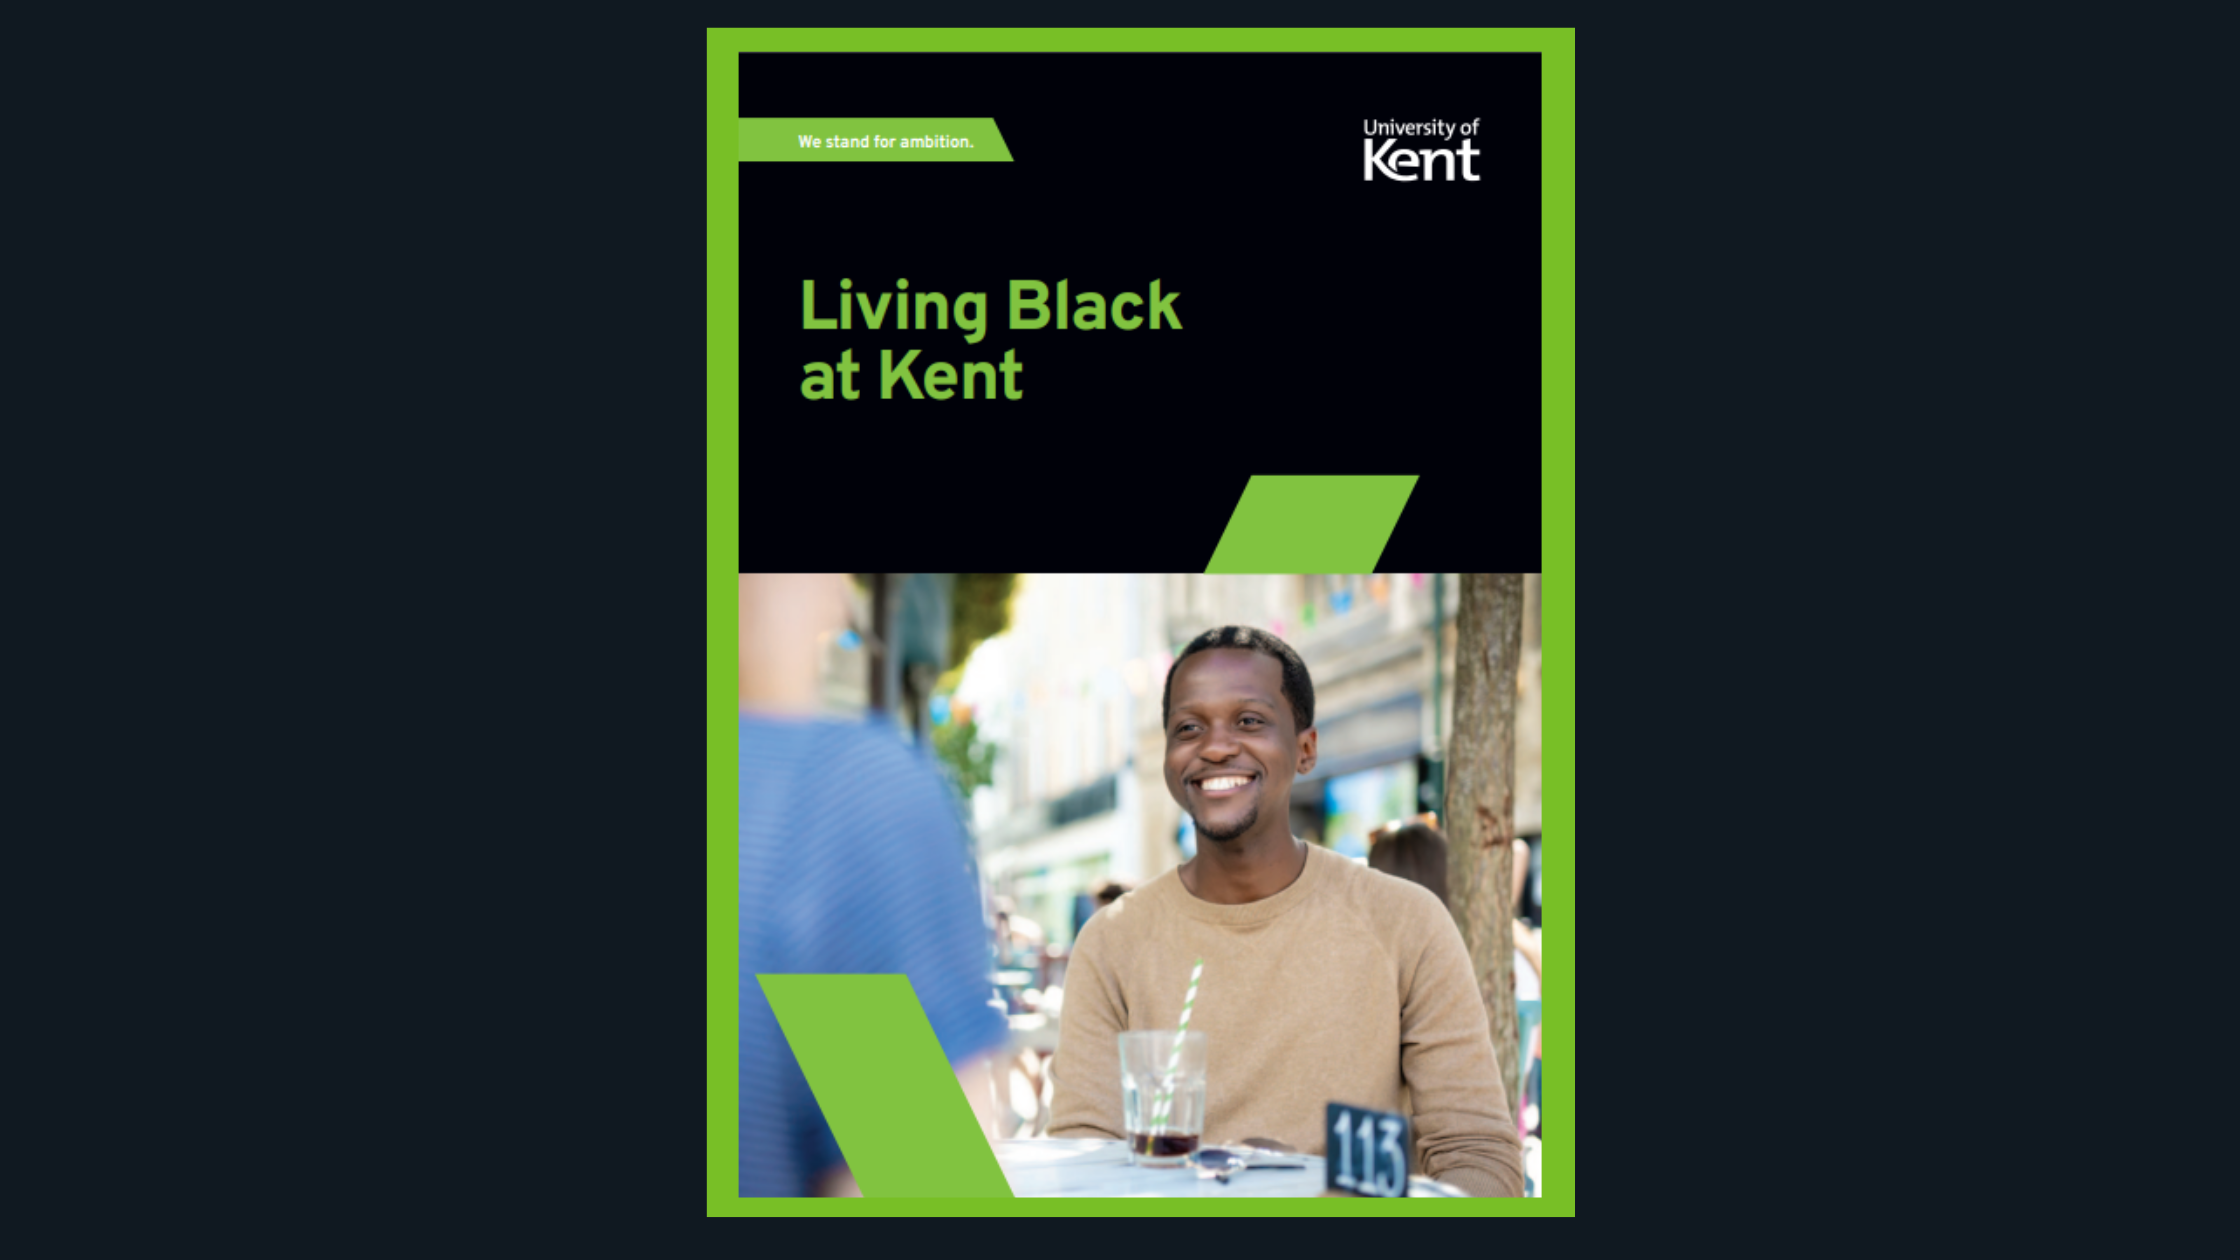 Living Black at Kent booklet